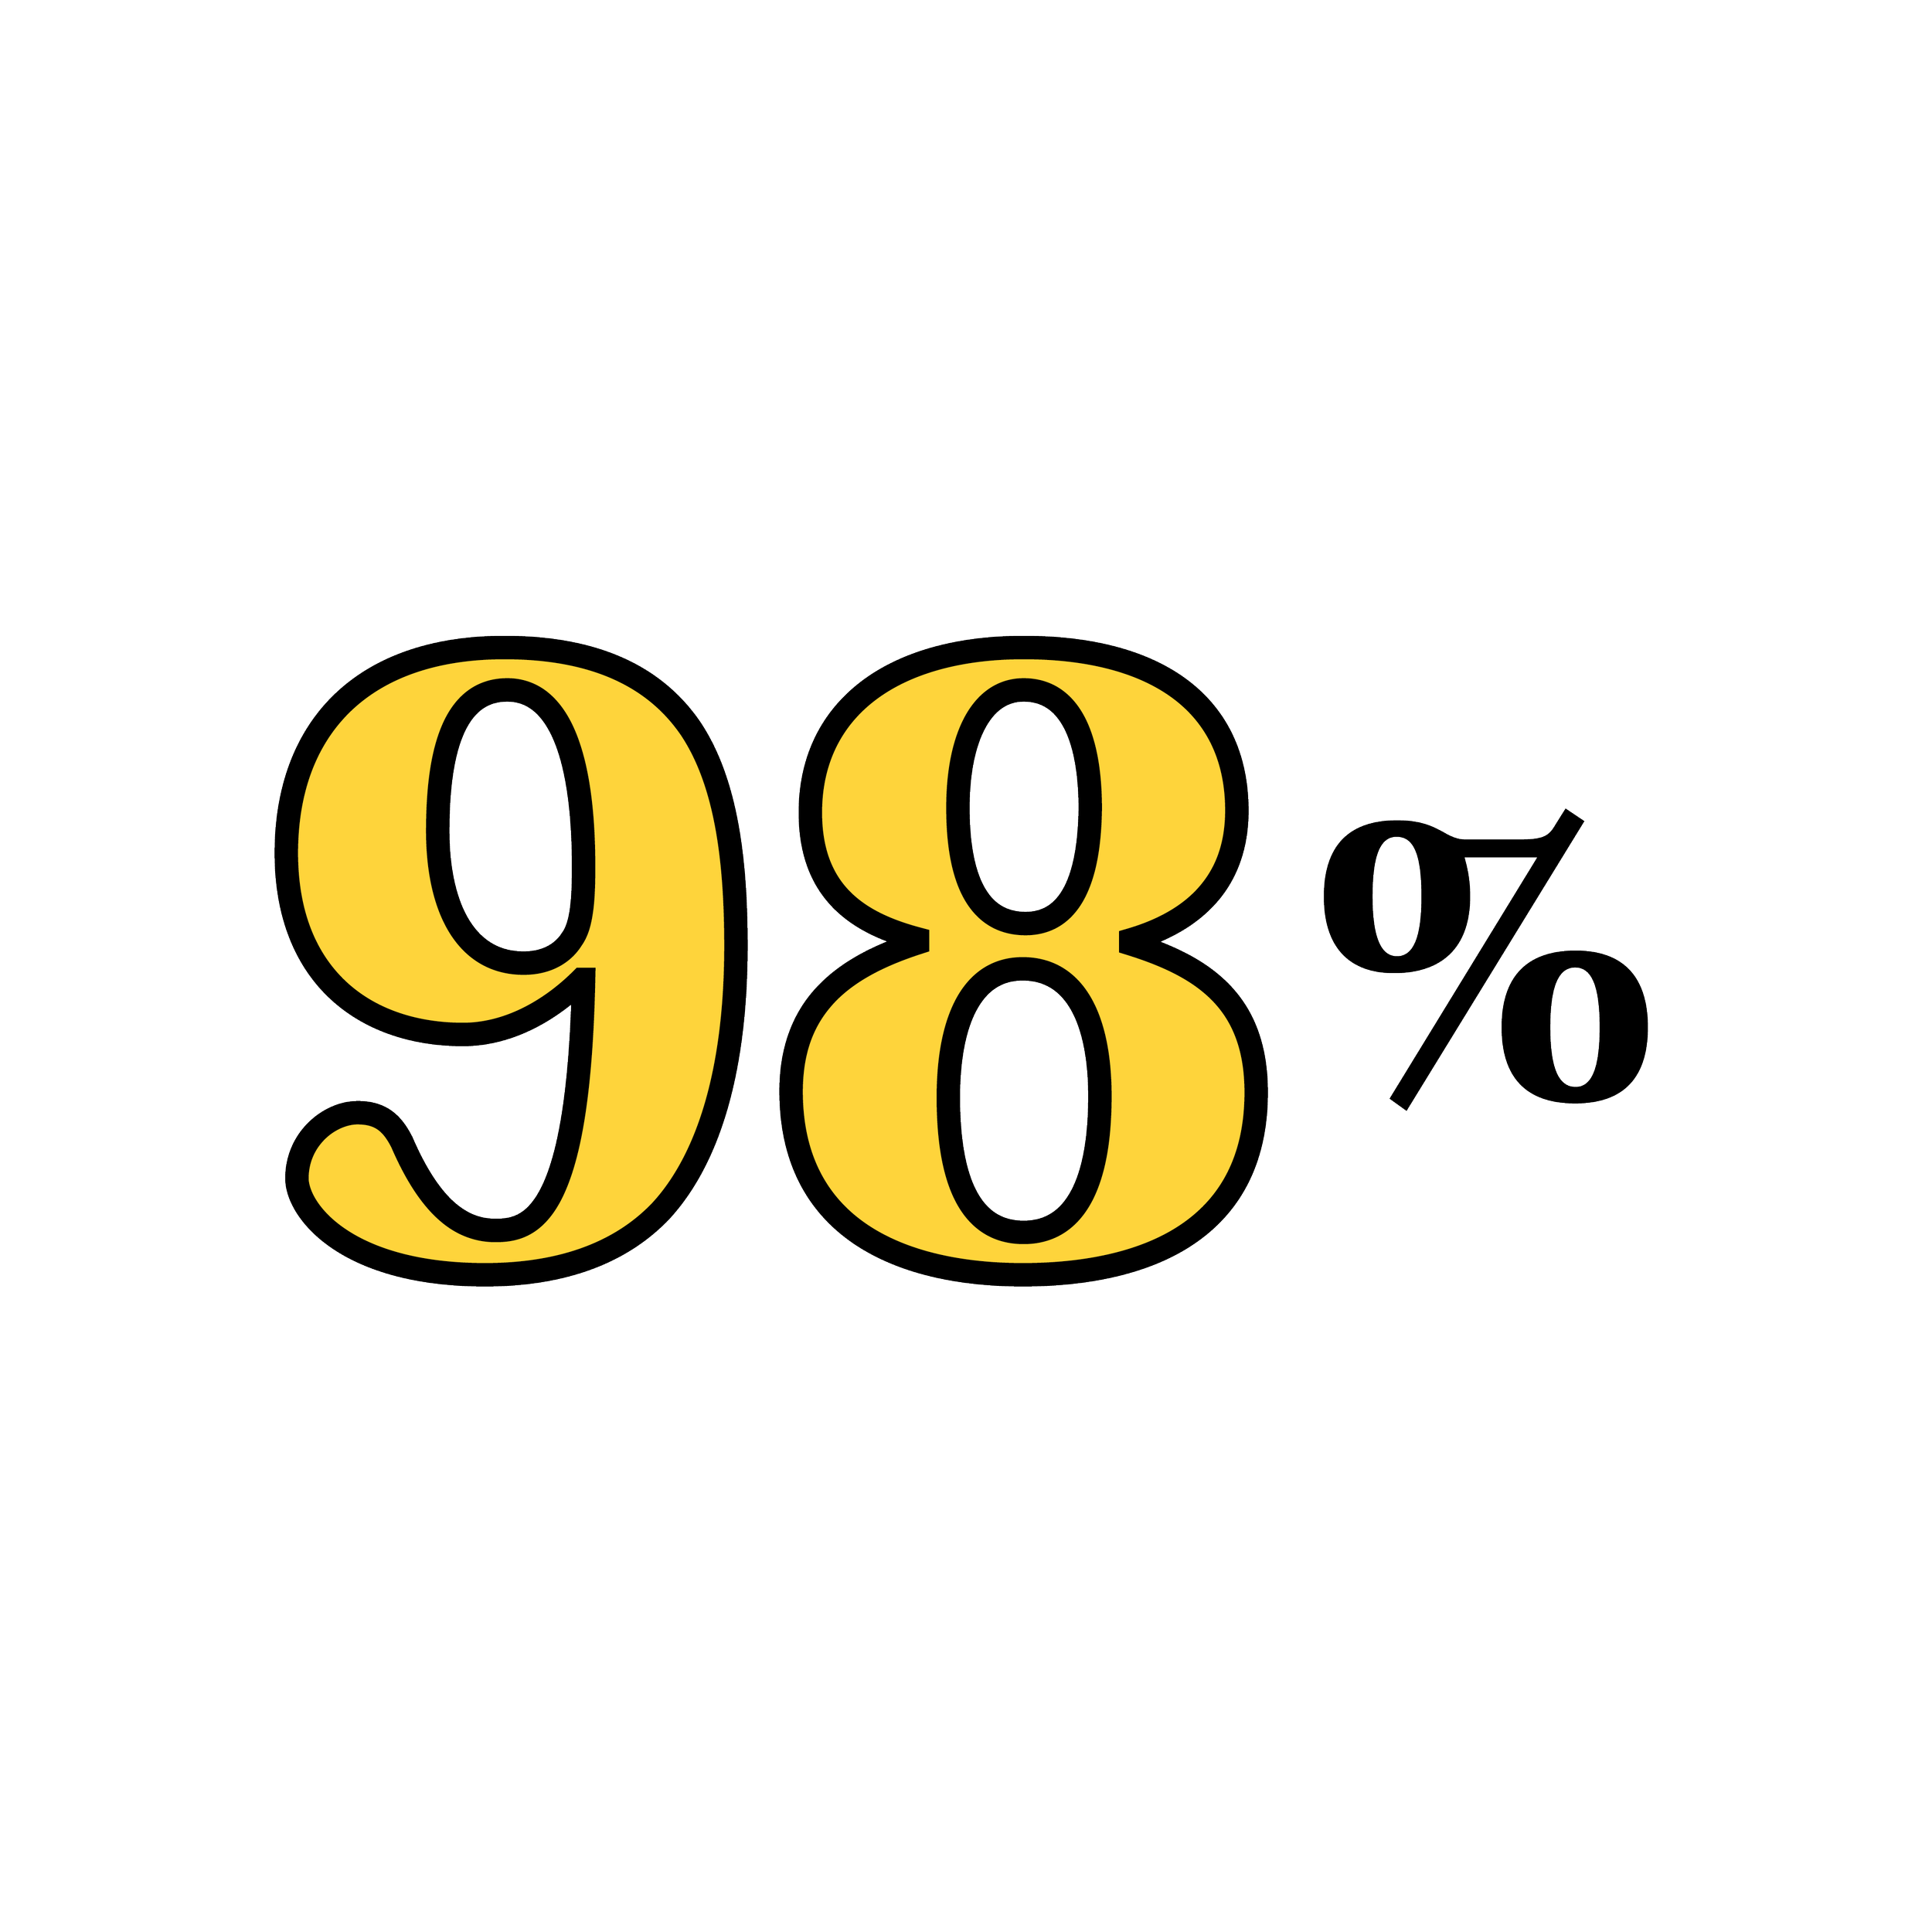 En svart och gul ikon av texten "98%".